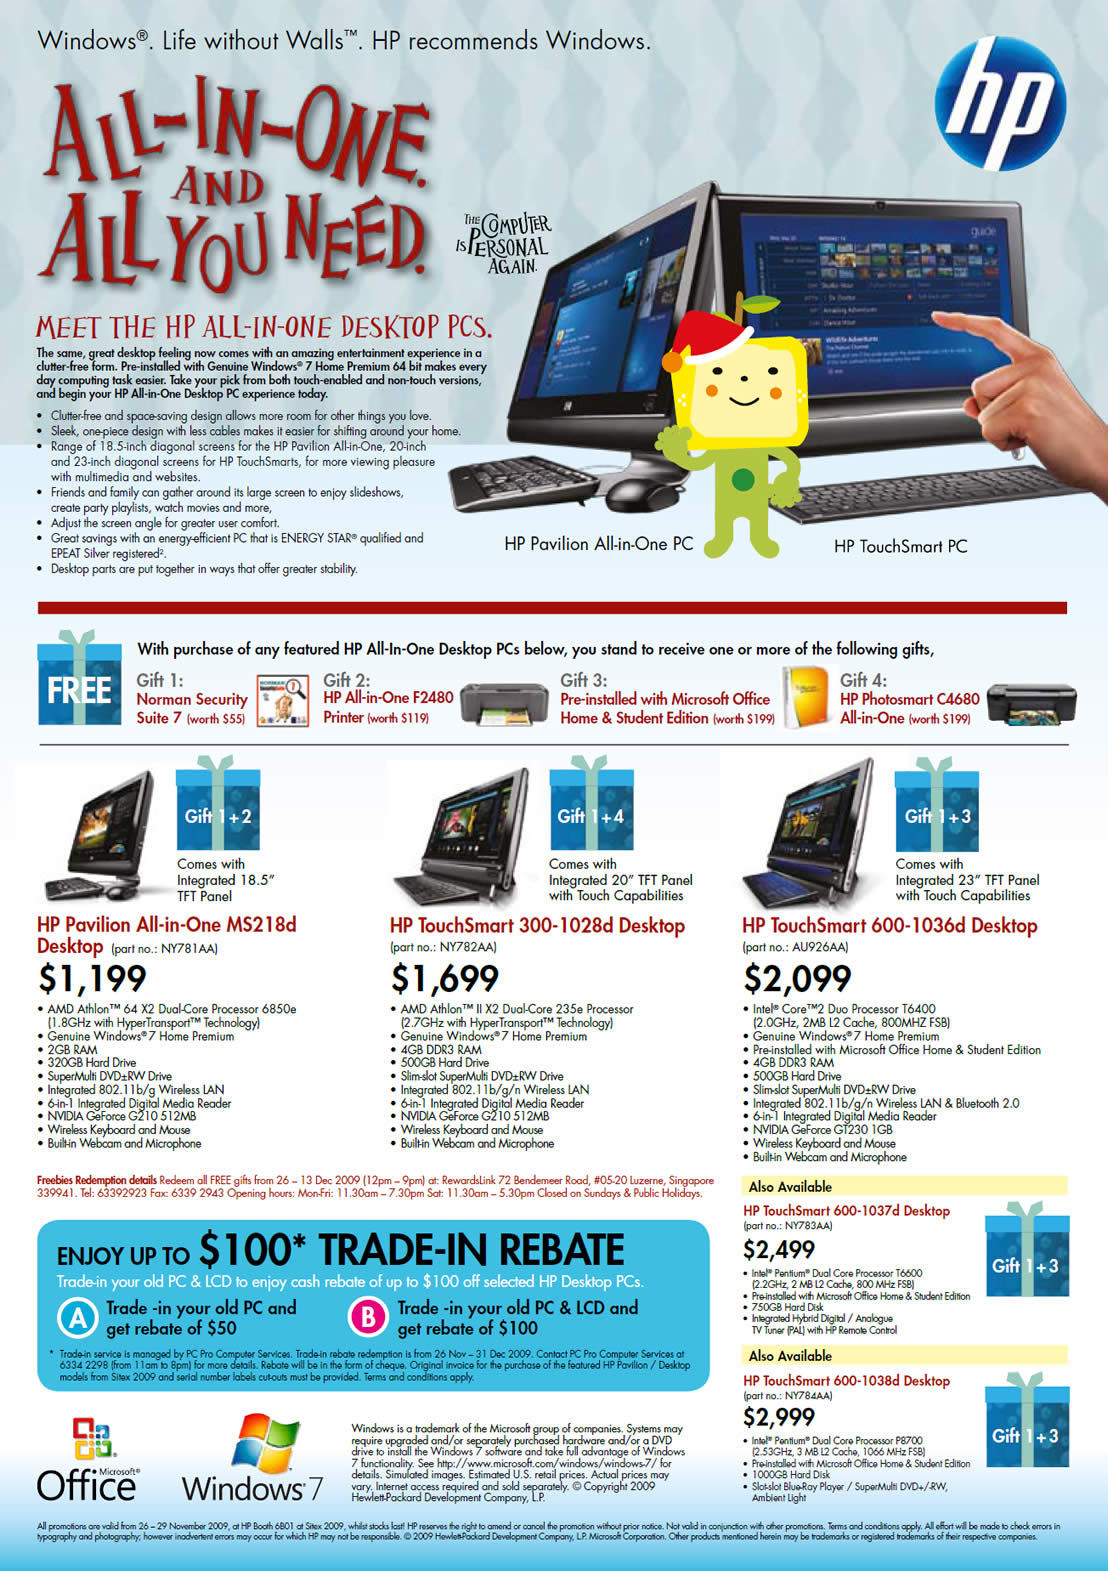 Sitex 2009 price list image brochure of HP Pavilion MS218d Desktop PC TouchSmart 3001028d 600 1036d 1037d 1038d